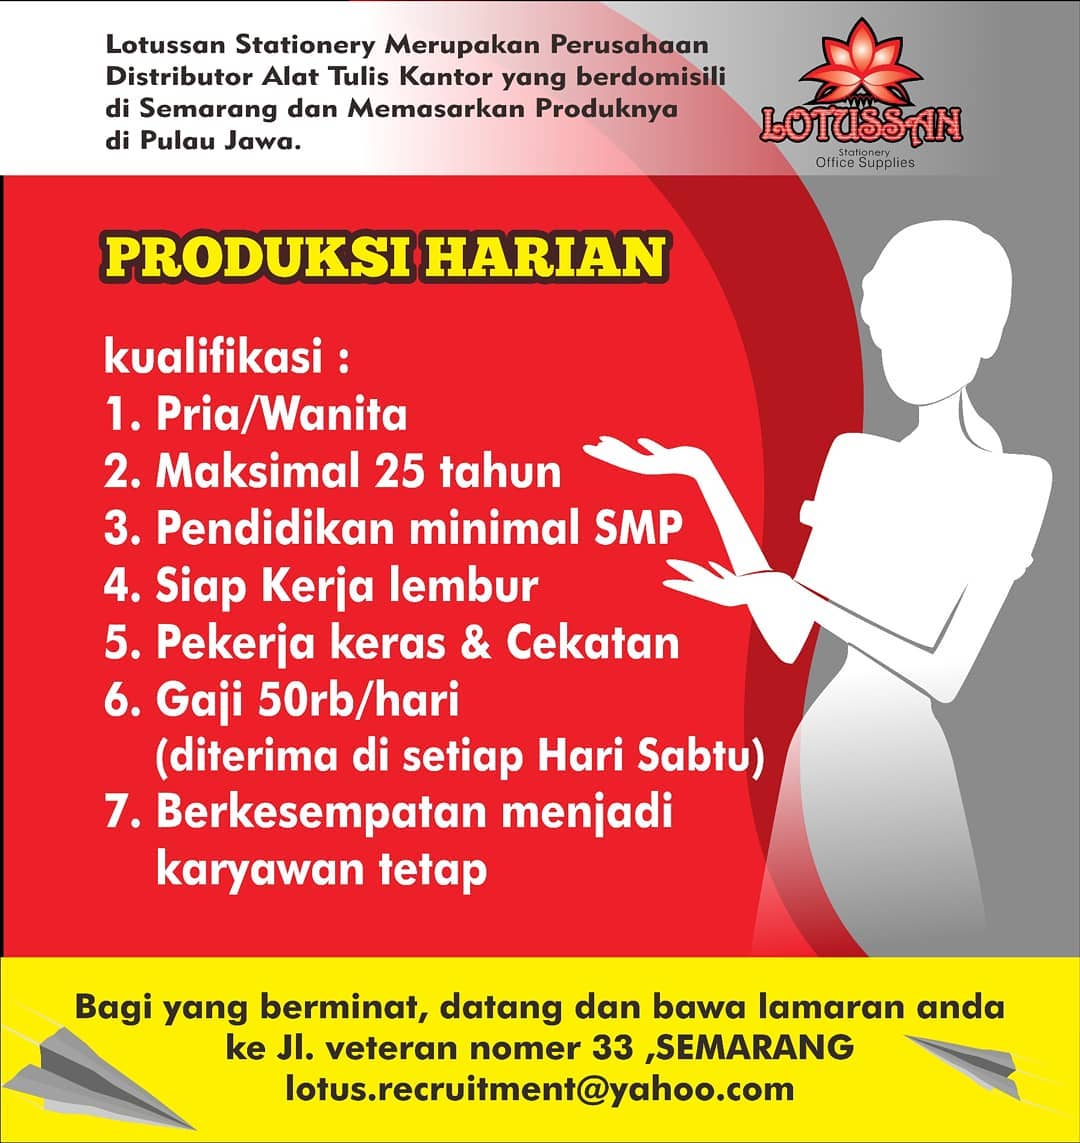 Loker Produksi Harian di Lotussan Stationery Semarang